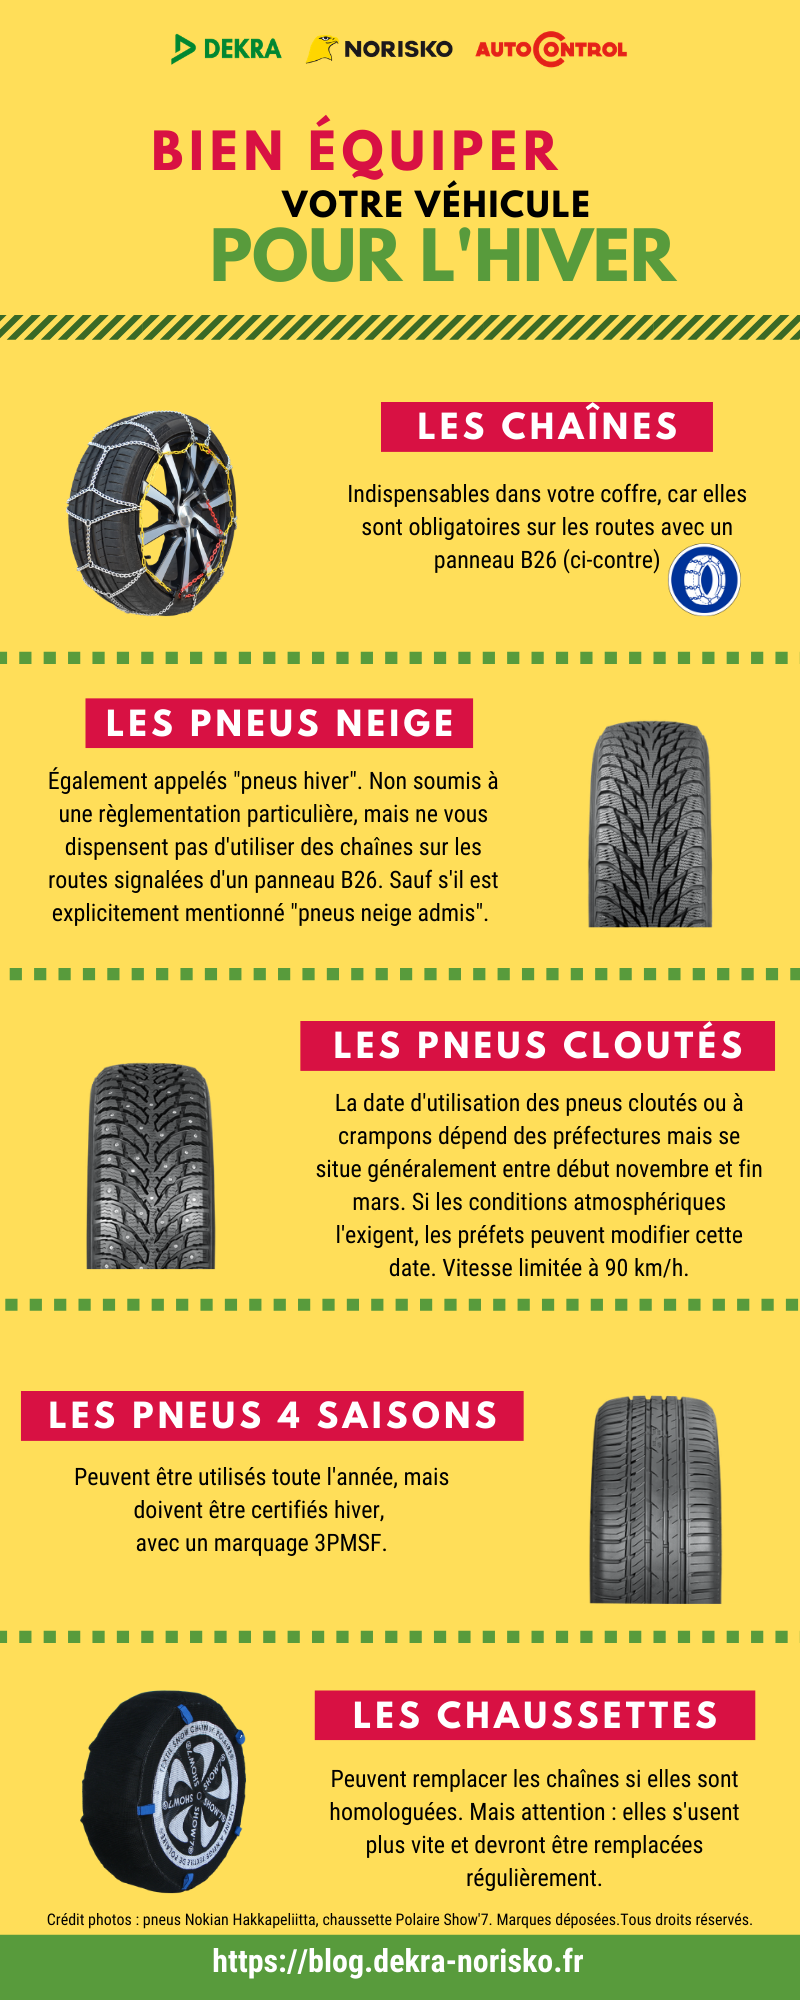 Réglementation pour bien équiper votre véhicule pour l’hiver : chaines, pneus neige, cloutés, 4 saisons, chaussettes